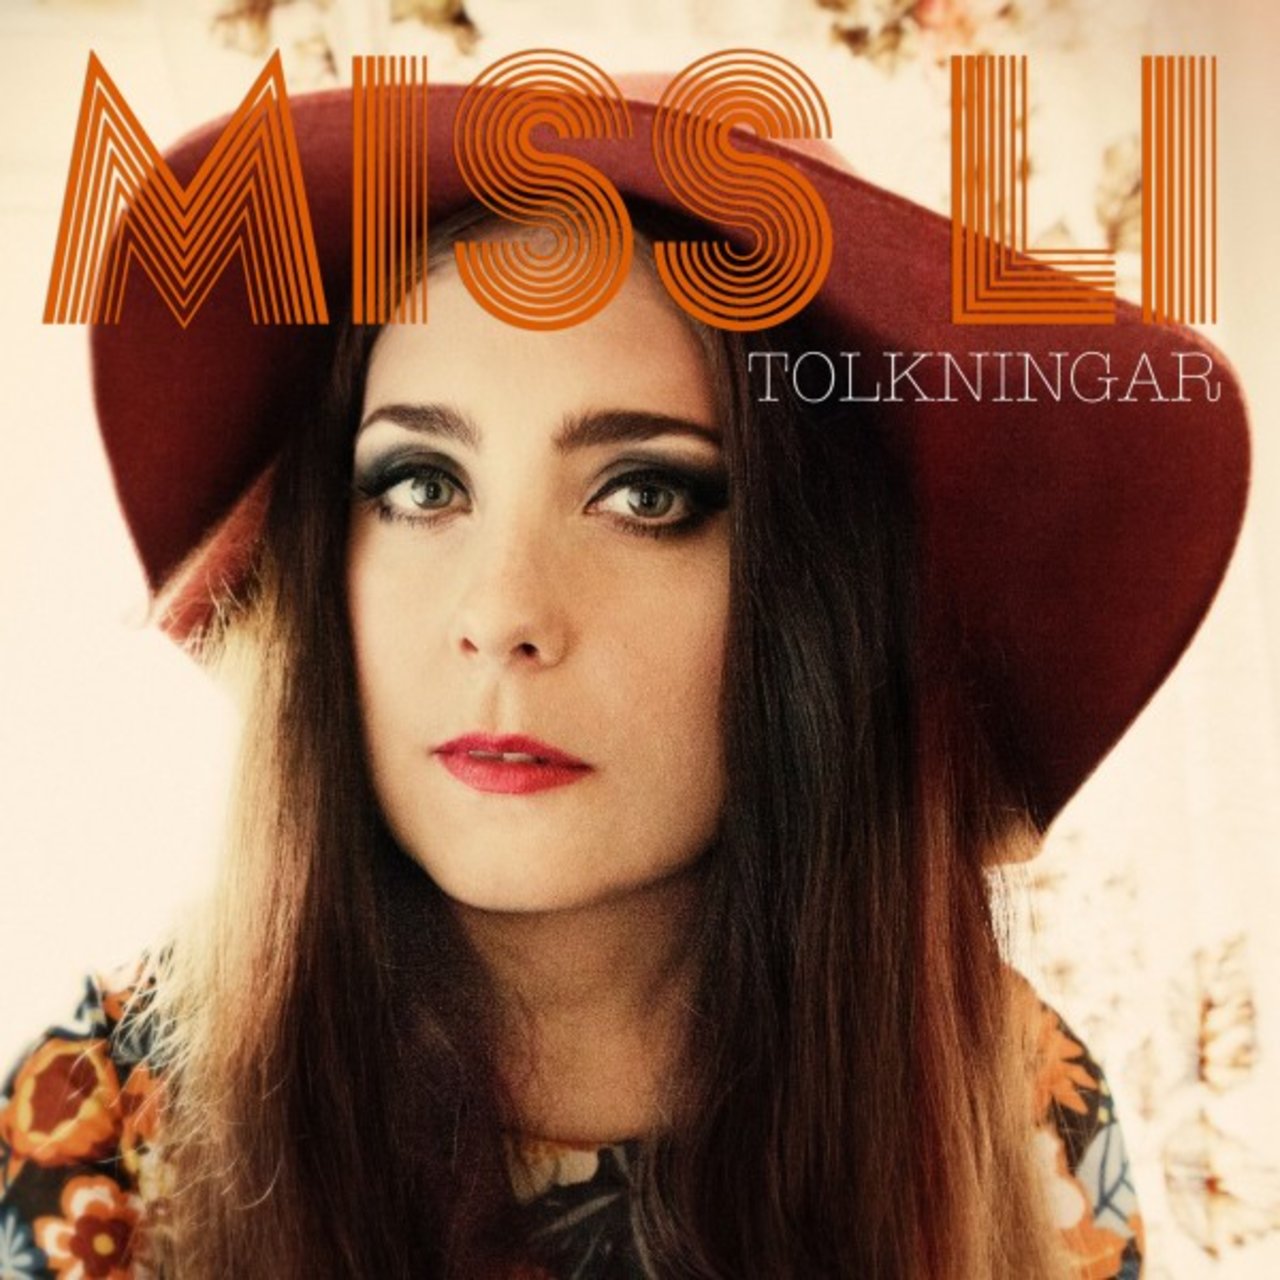 Miss Li Så mycket bättre 2012 - Tolkningar cover artwork